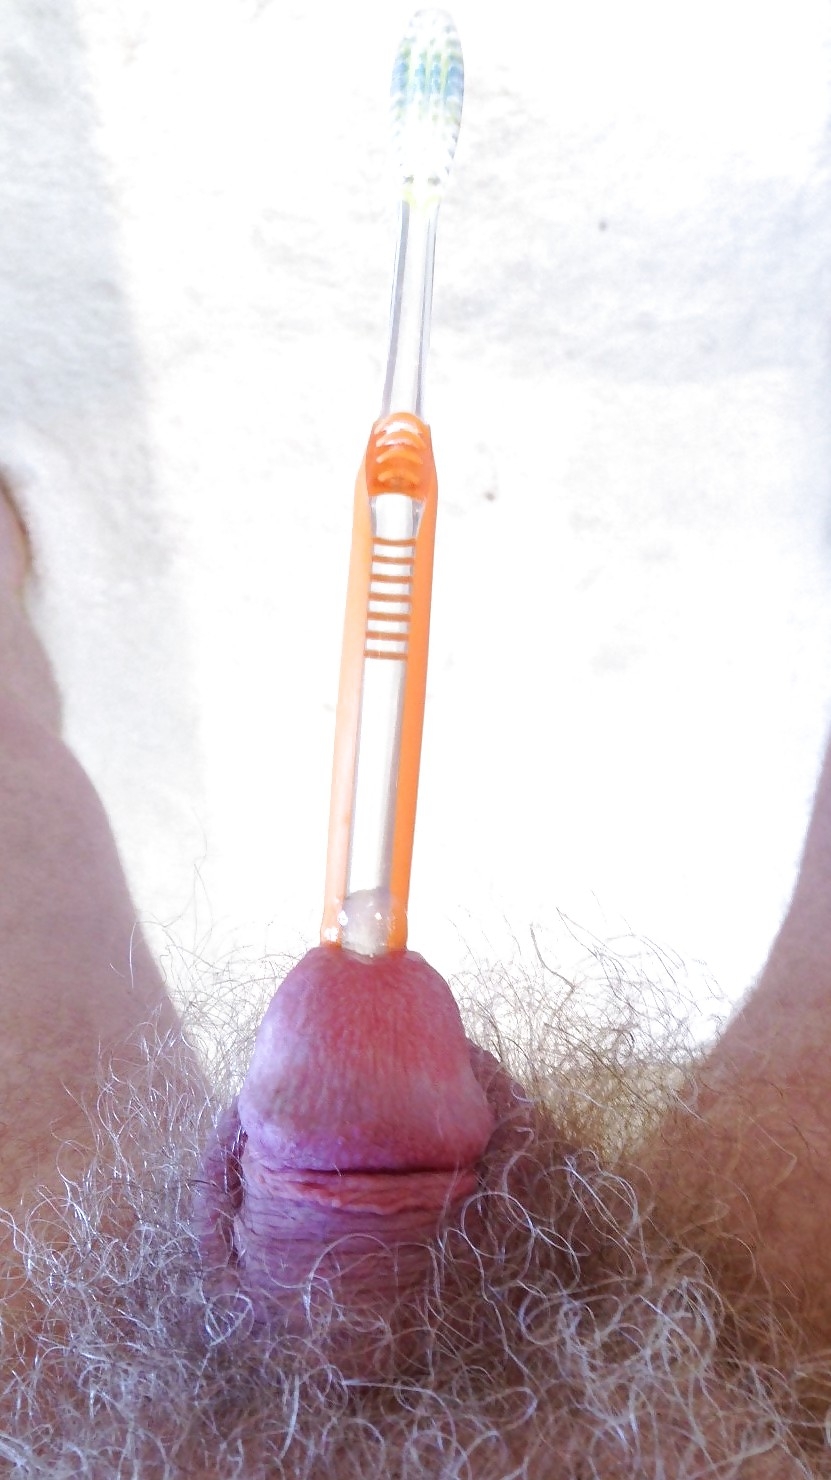 электрической зубной щеткой порно фото 105